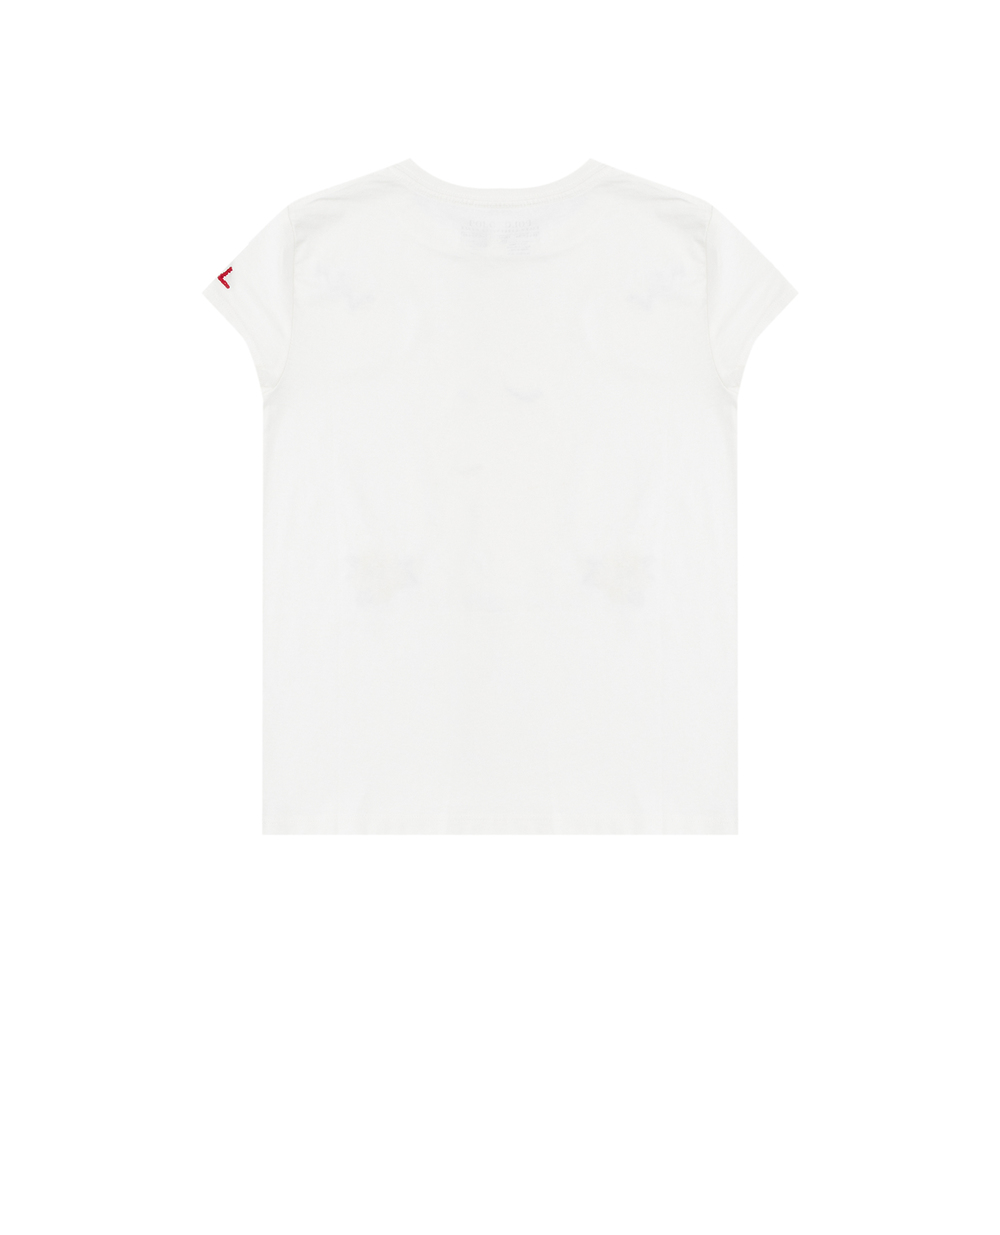 Детская футболка Polo Bear Polo Ralph Lauren Kids 313914367001, белый цвет • Купить в интернет-магазине Kameron